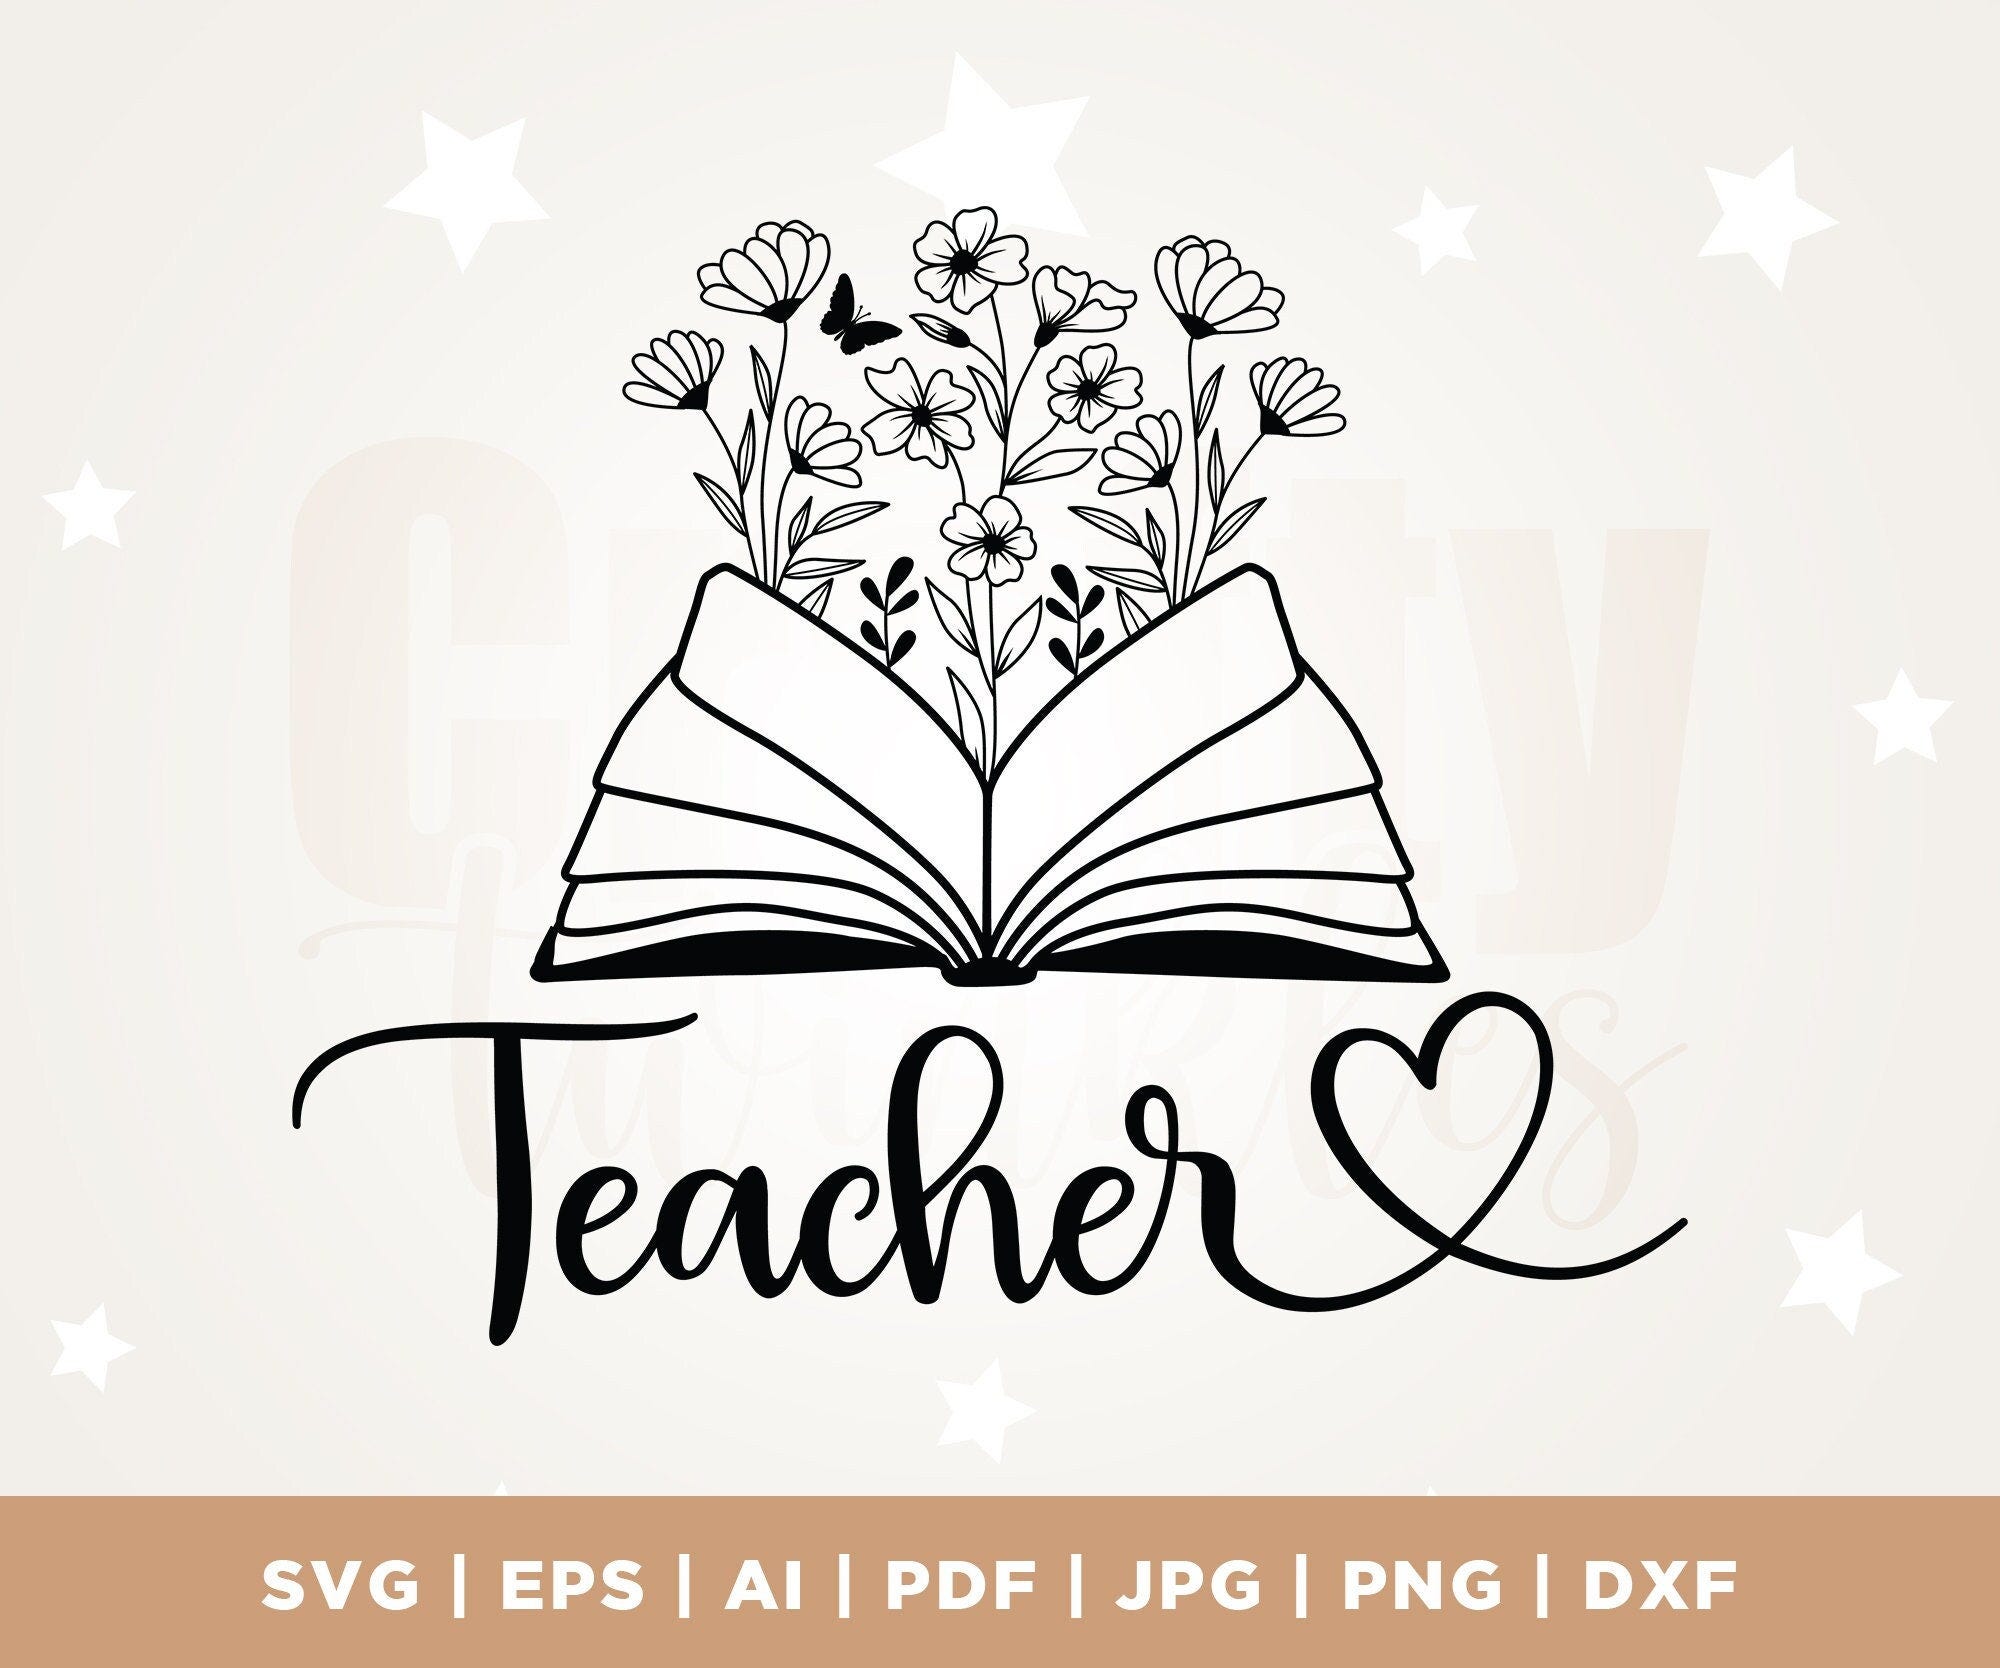 Teacher Shirt Svg, Teacher Gift, Best Teacher, Svg Cut Files, Teacher SVG, Cricut, Svg, Teacher Life SVG, Teacher Appreciation SVG, School